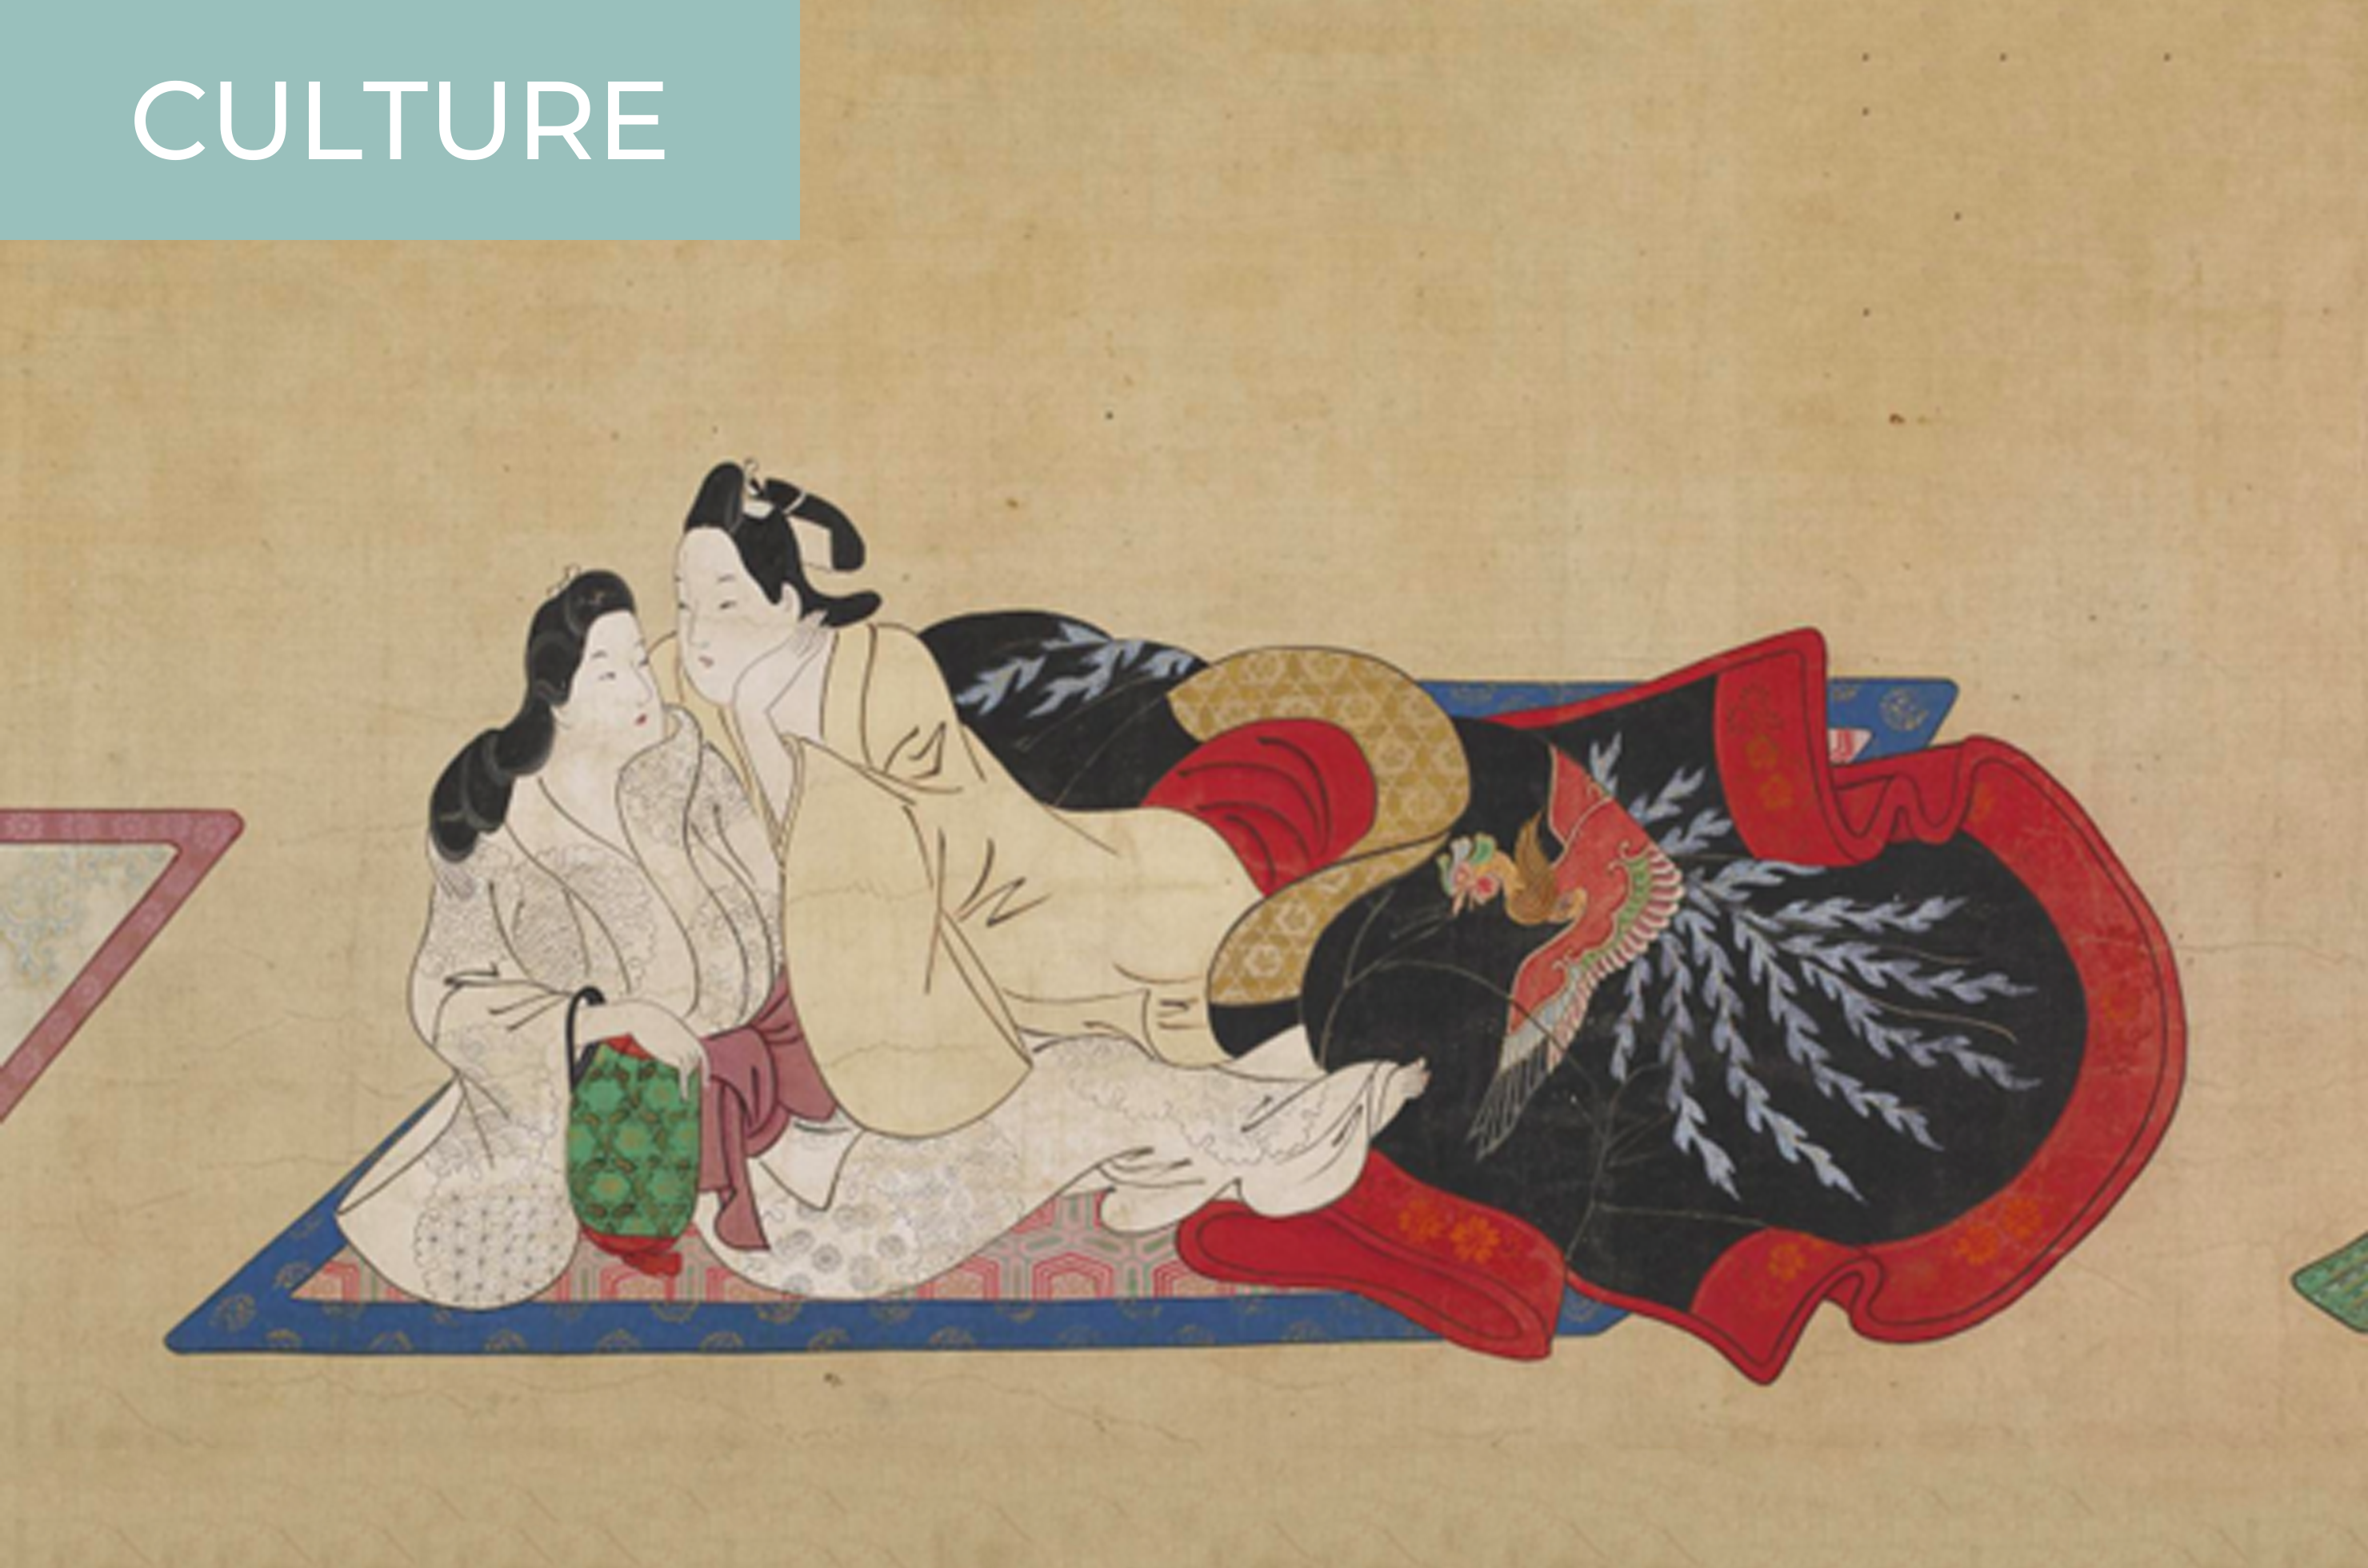 Shunga Ancient Japanese Pornography, or Something Else? photo